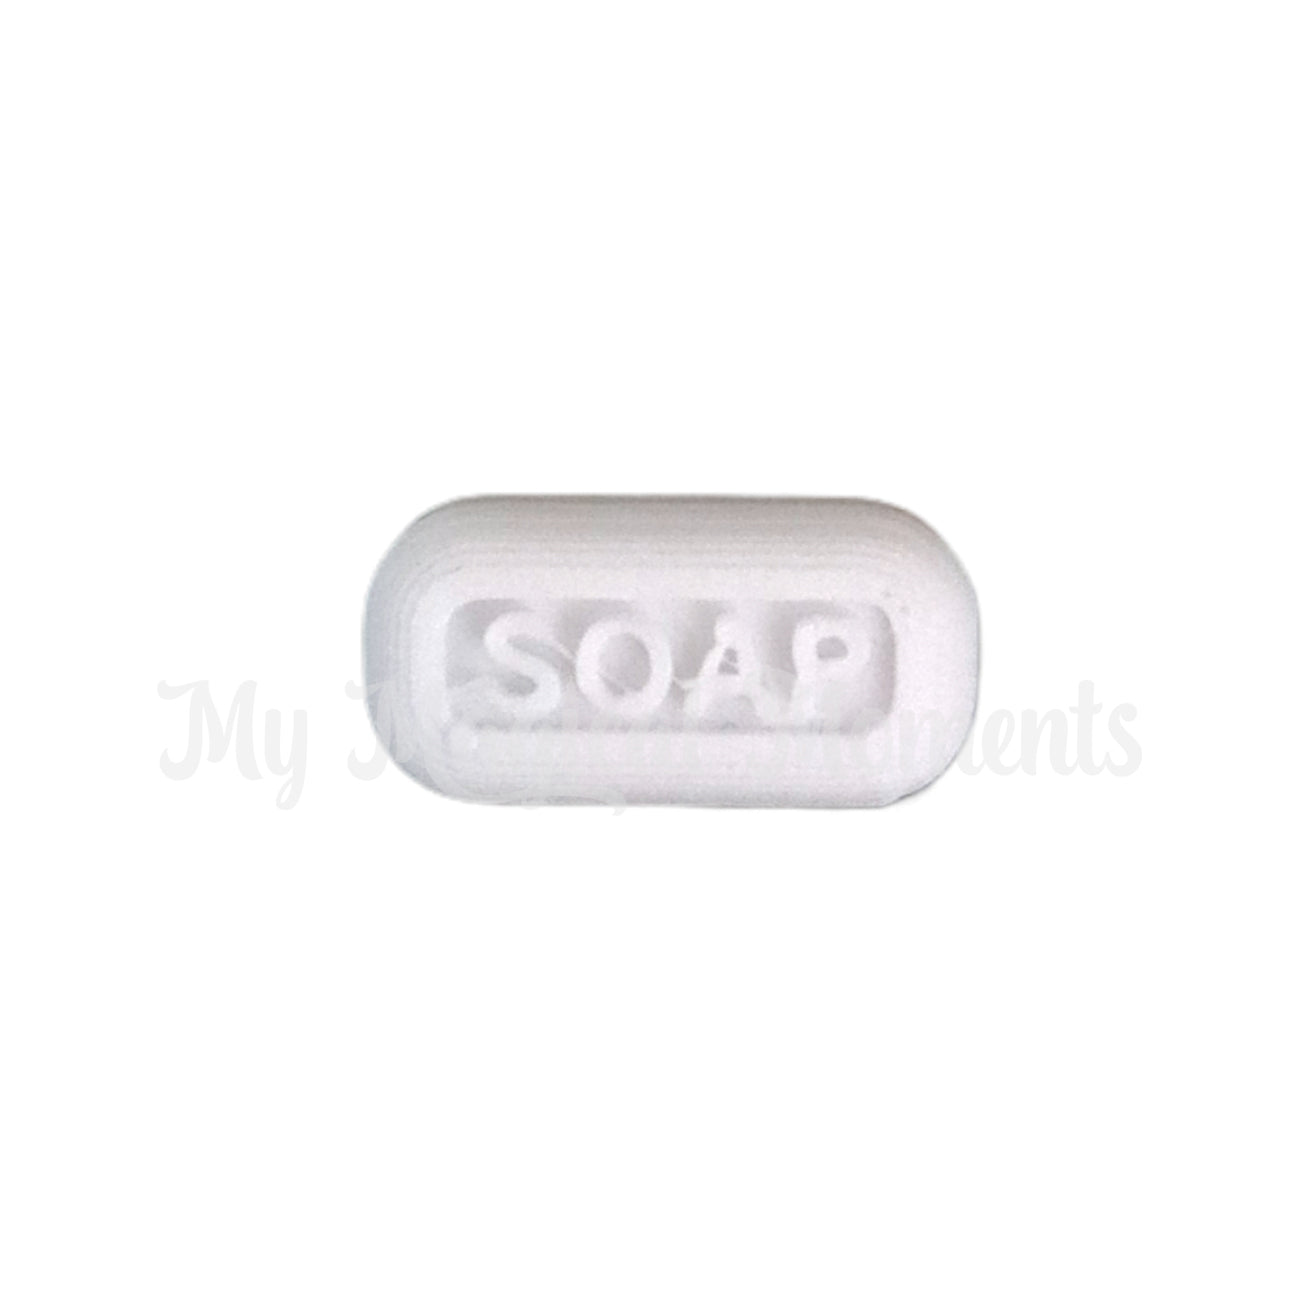 Miniature soap elf prop